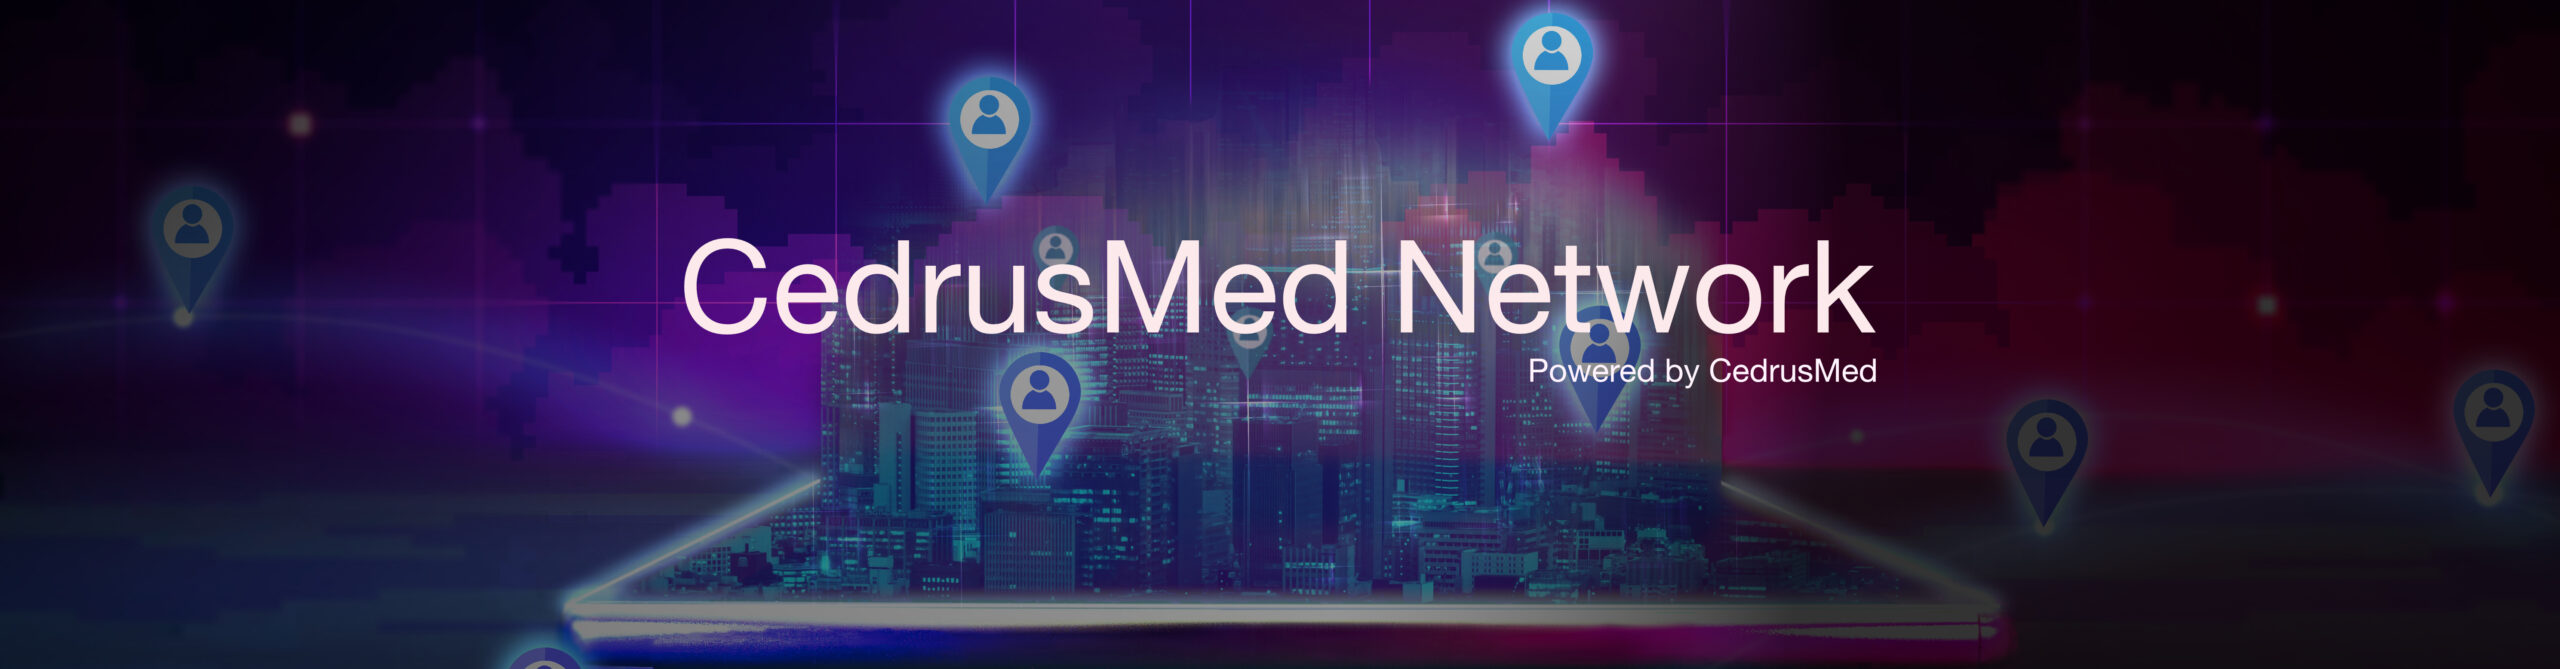 CedrusMed Network